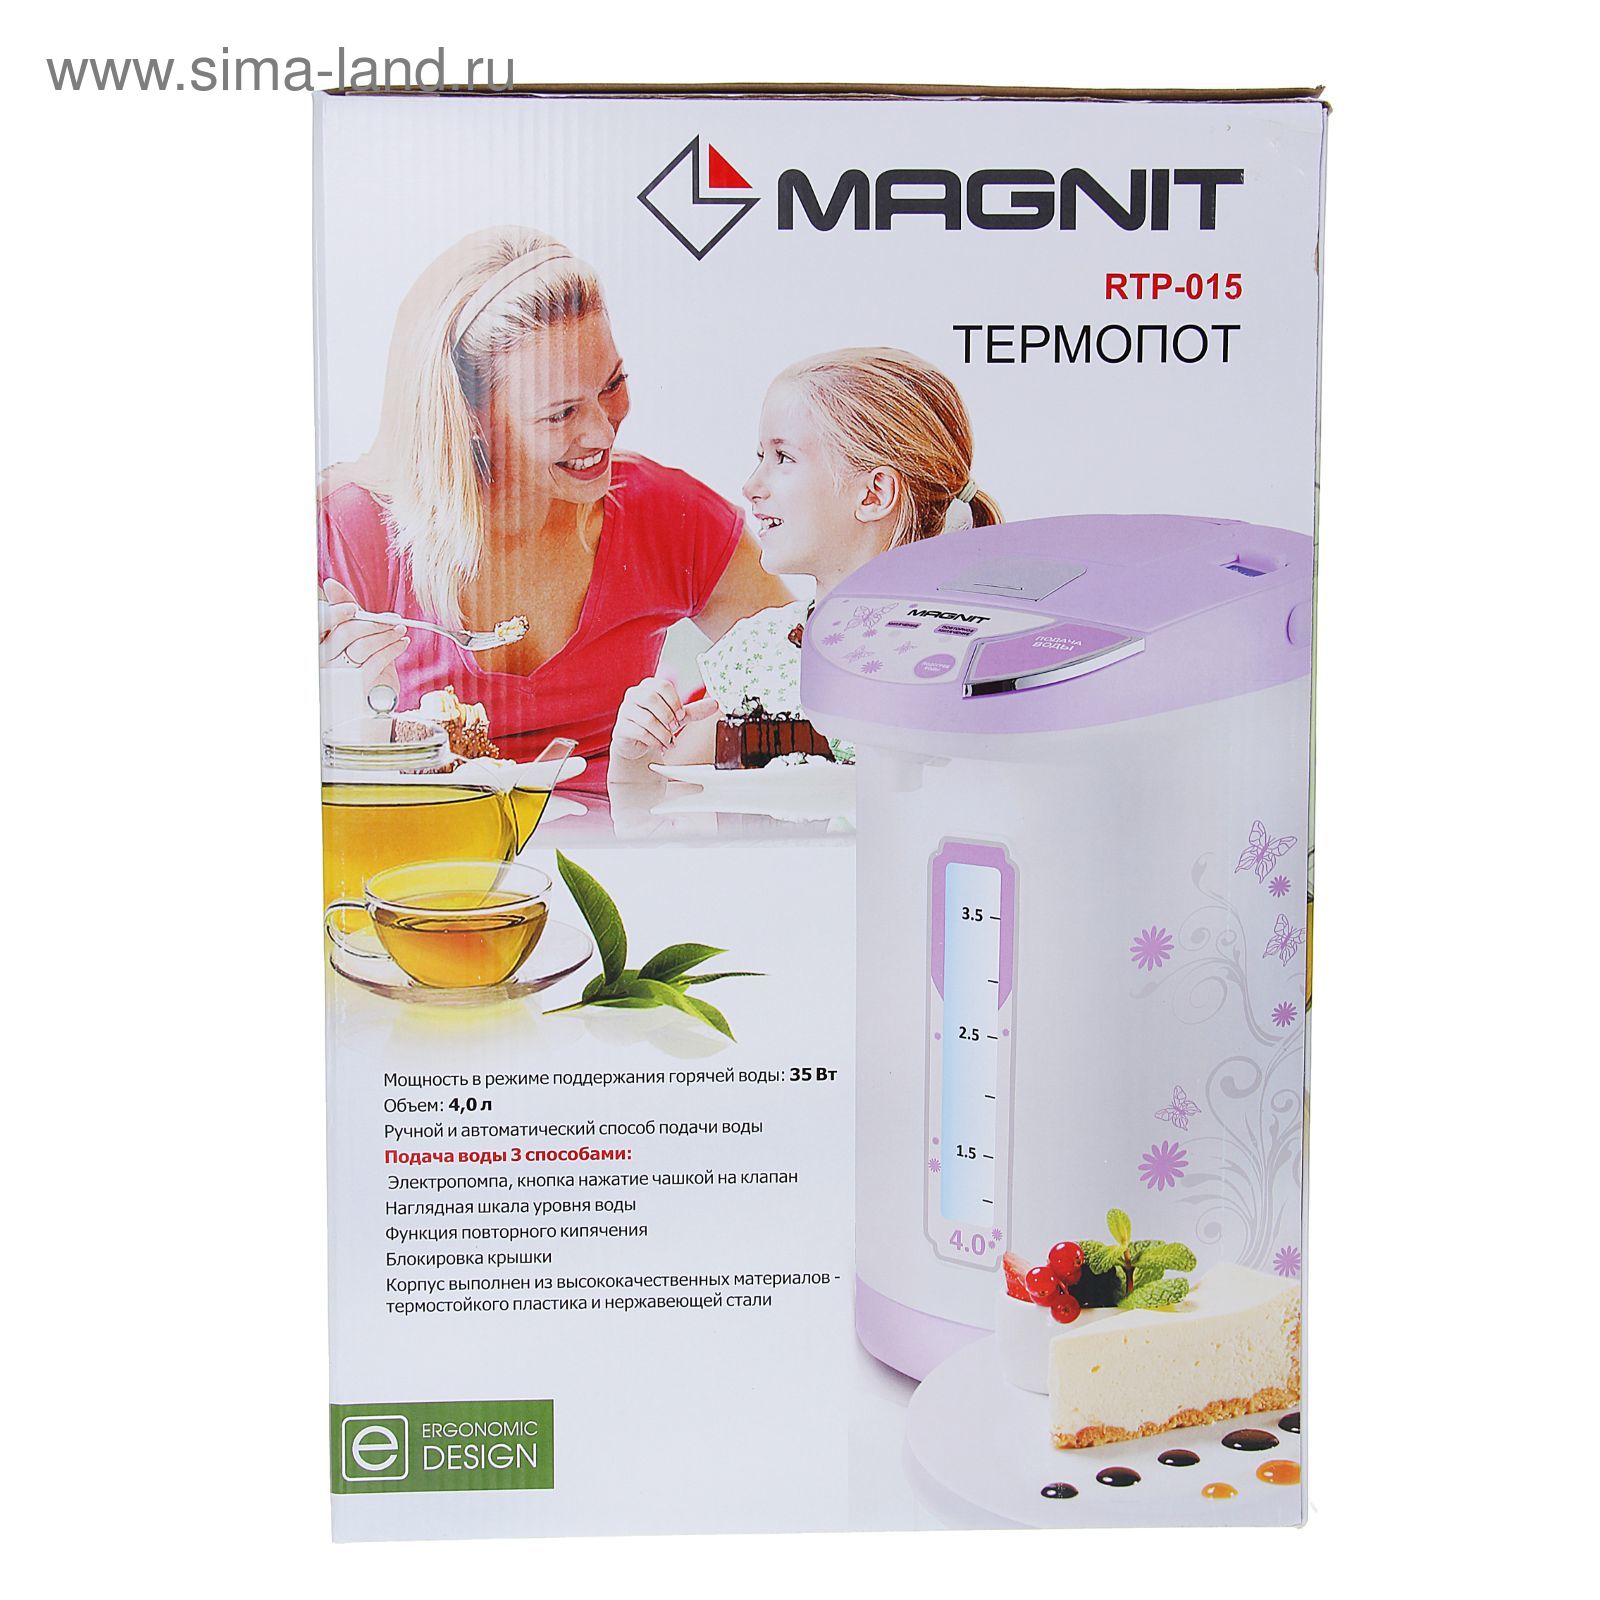 Термопот 750вт. Термопот Magnit RTP-015. Термопот Magnit RTP-031 (4 Л). Magnit RTP-033 750вт, 4л,черный. Термопот Magnit RTP-033 насос.